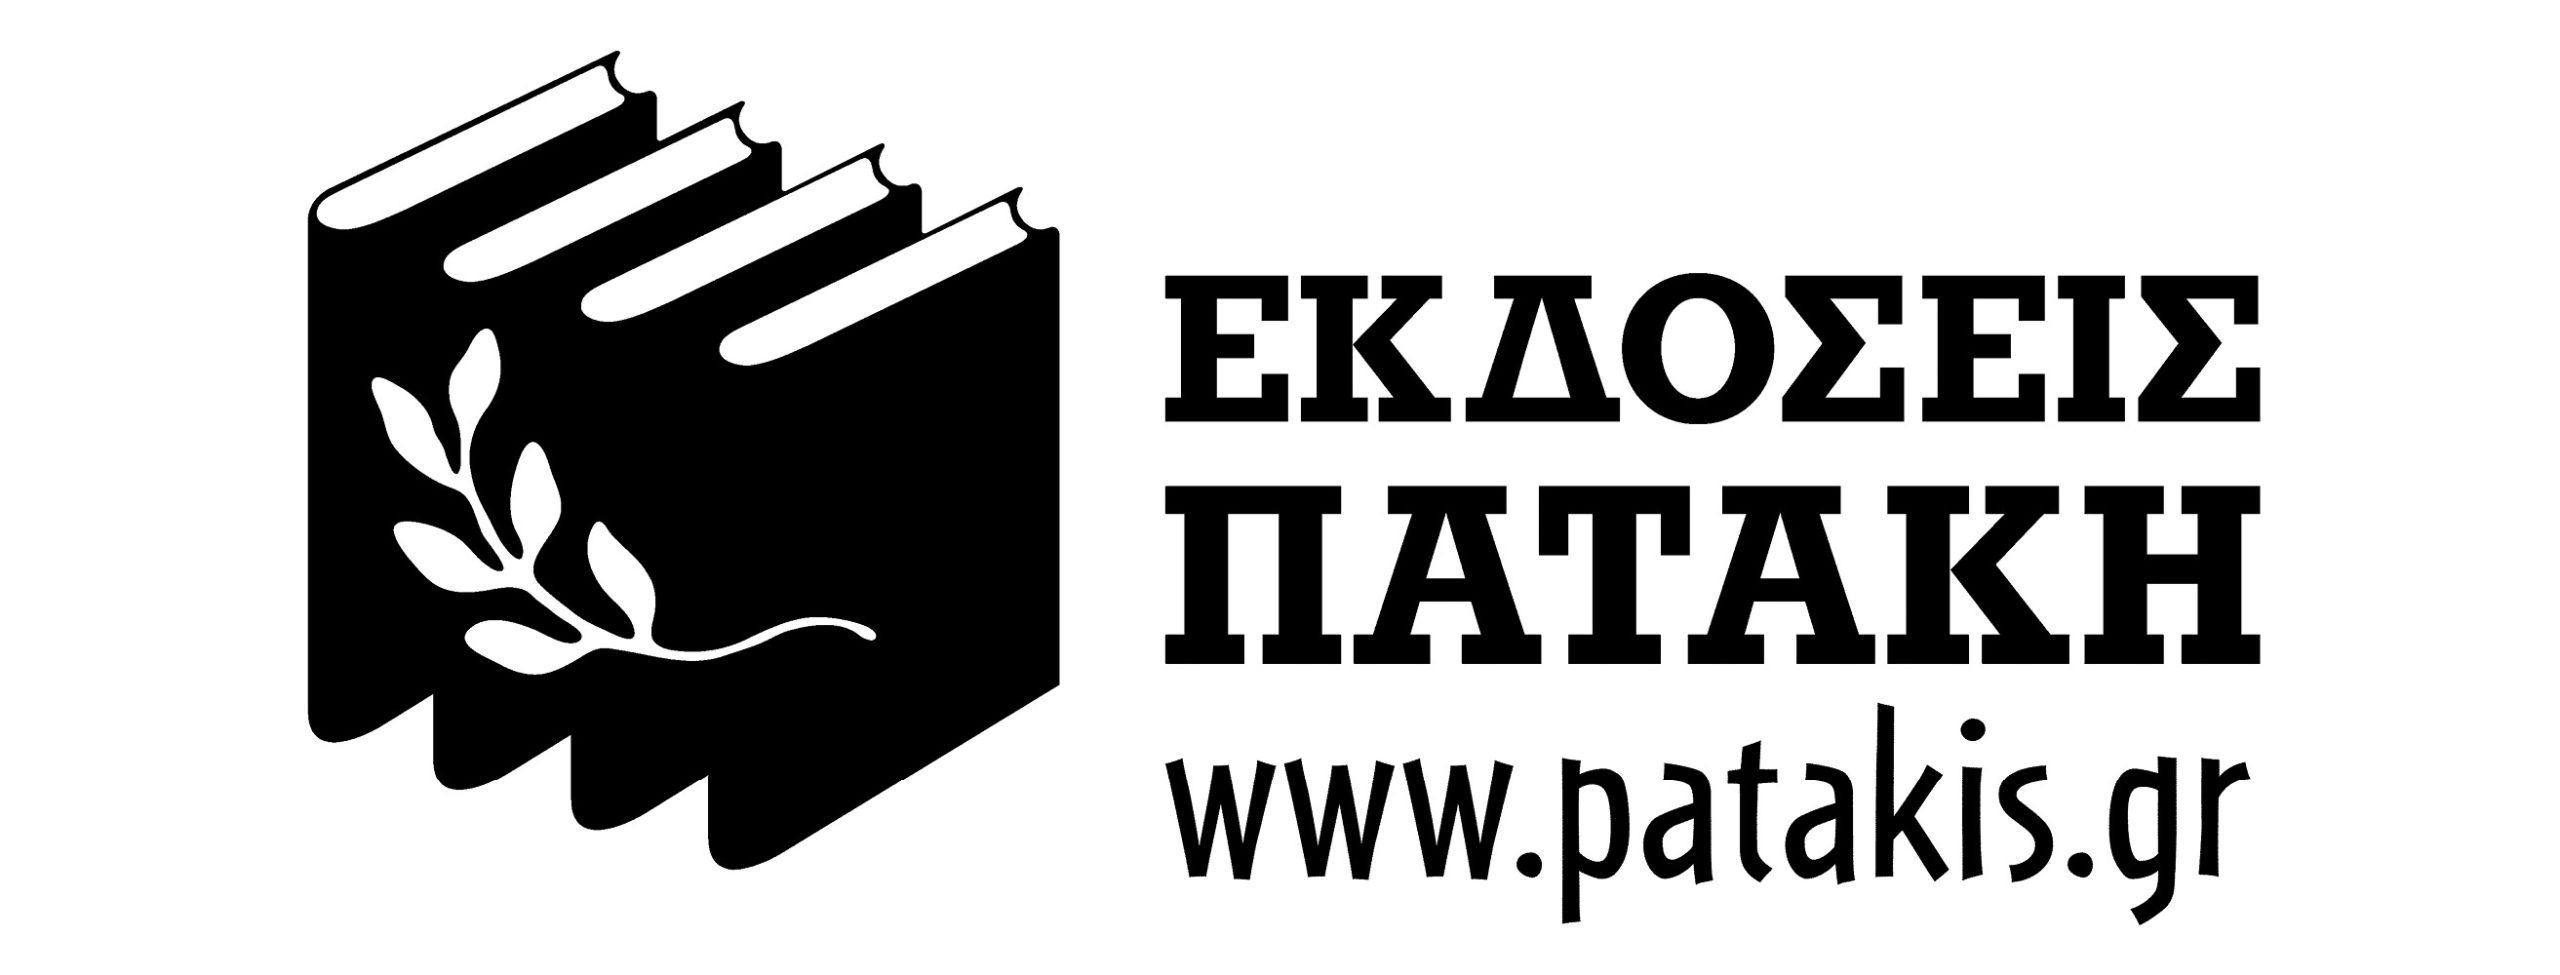 Patakis Publishers